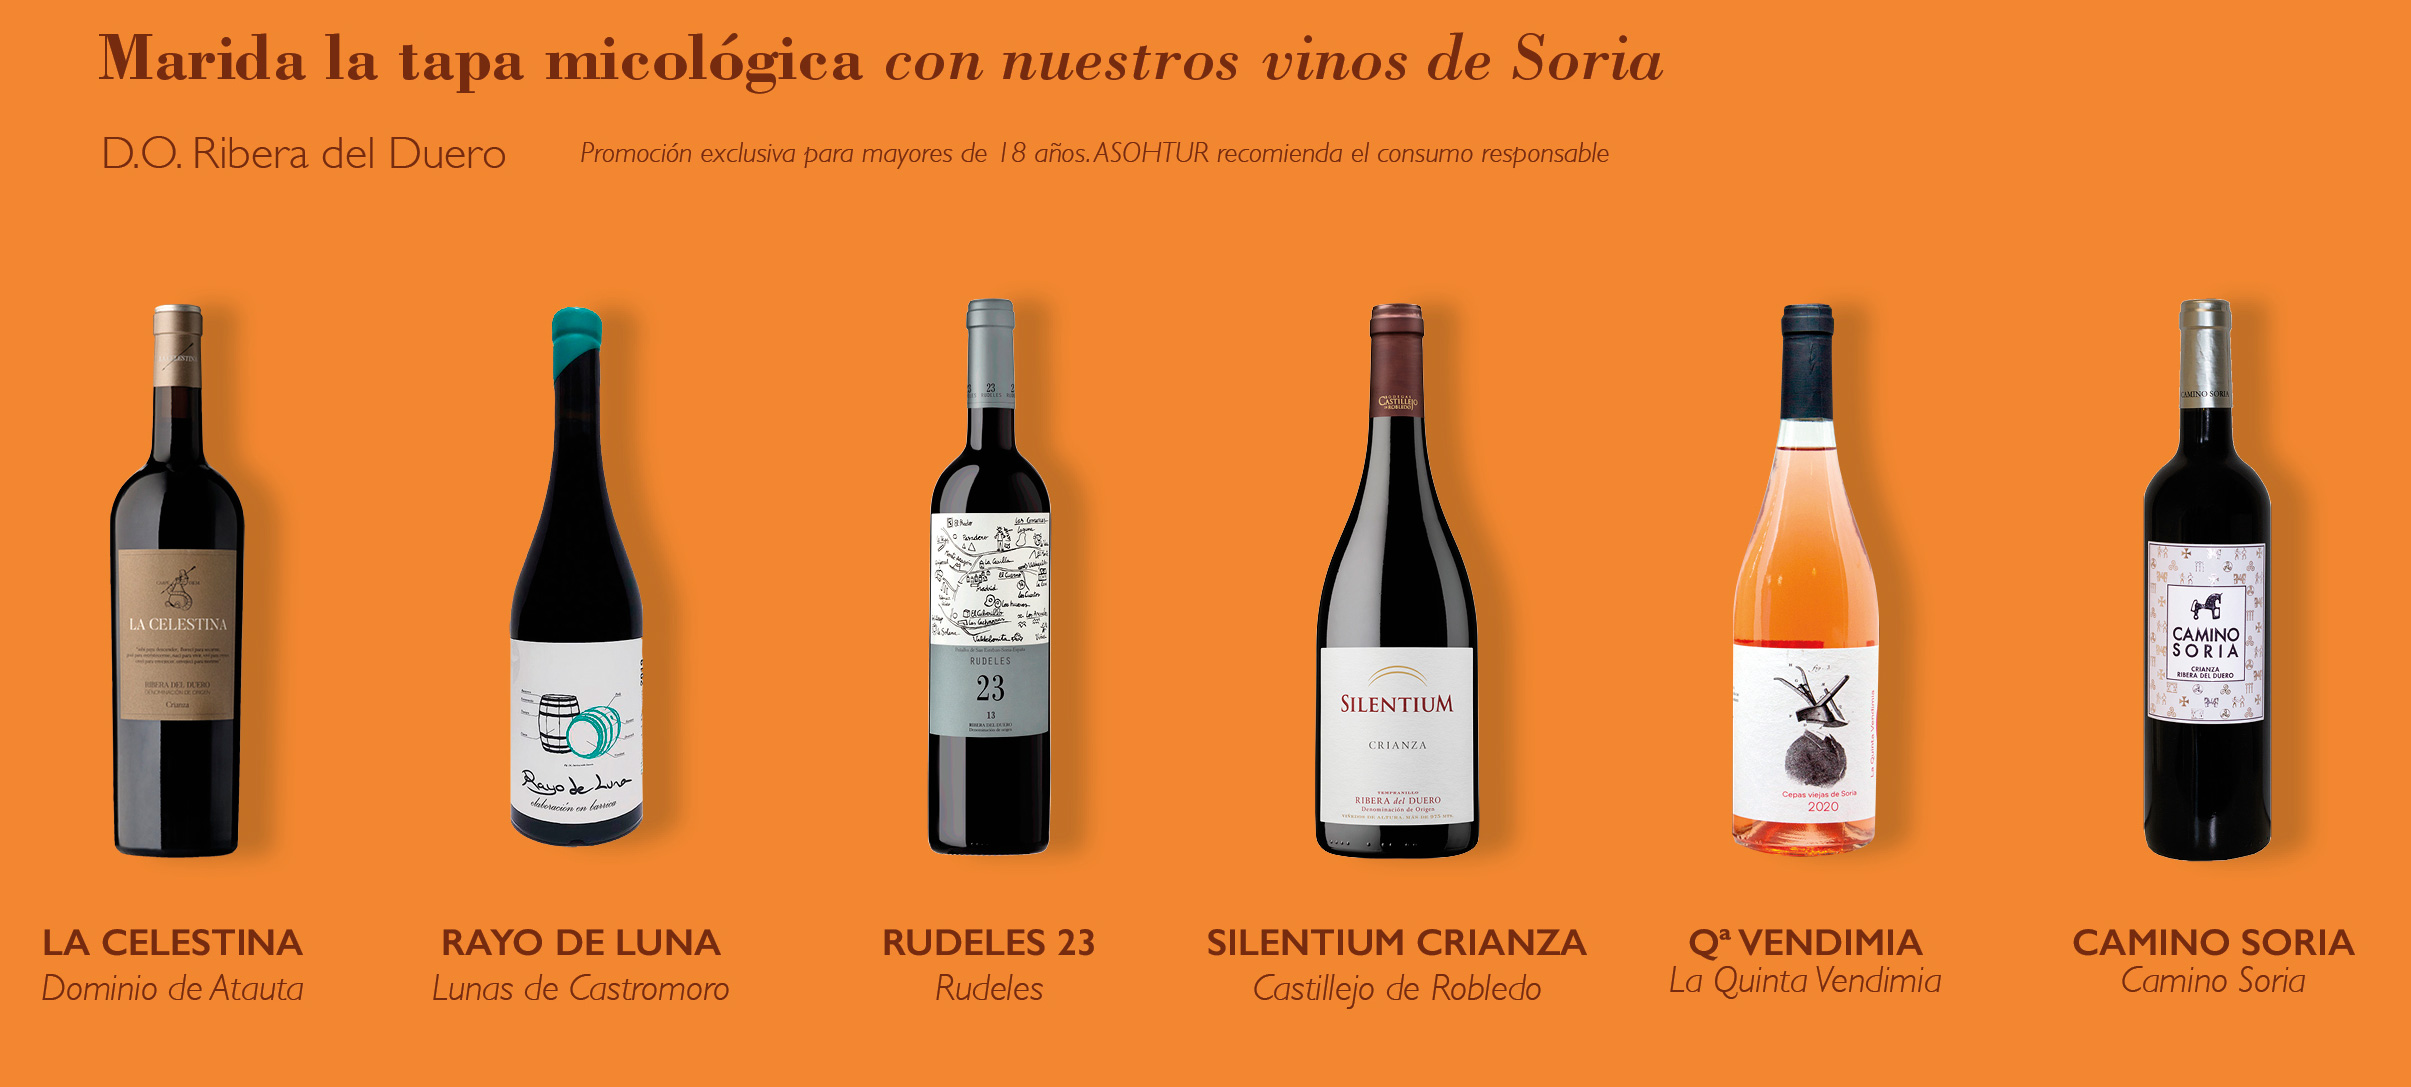 Vinos de Soria